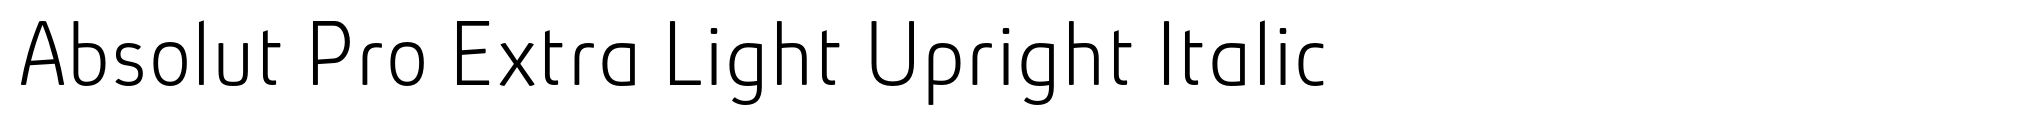 Absolut Pro Extra Light Upright Italic image